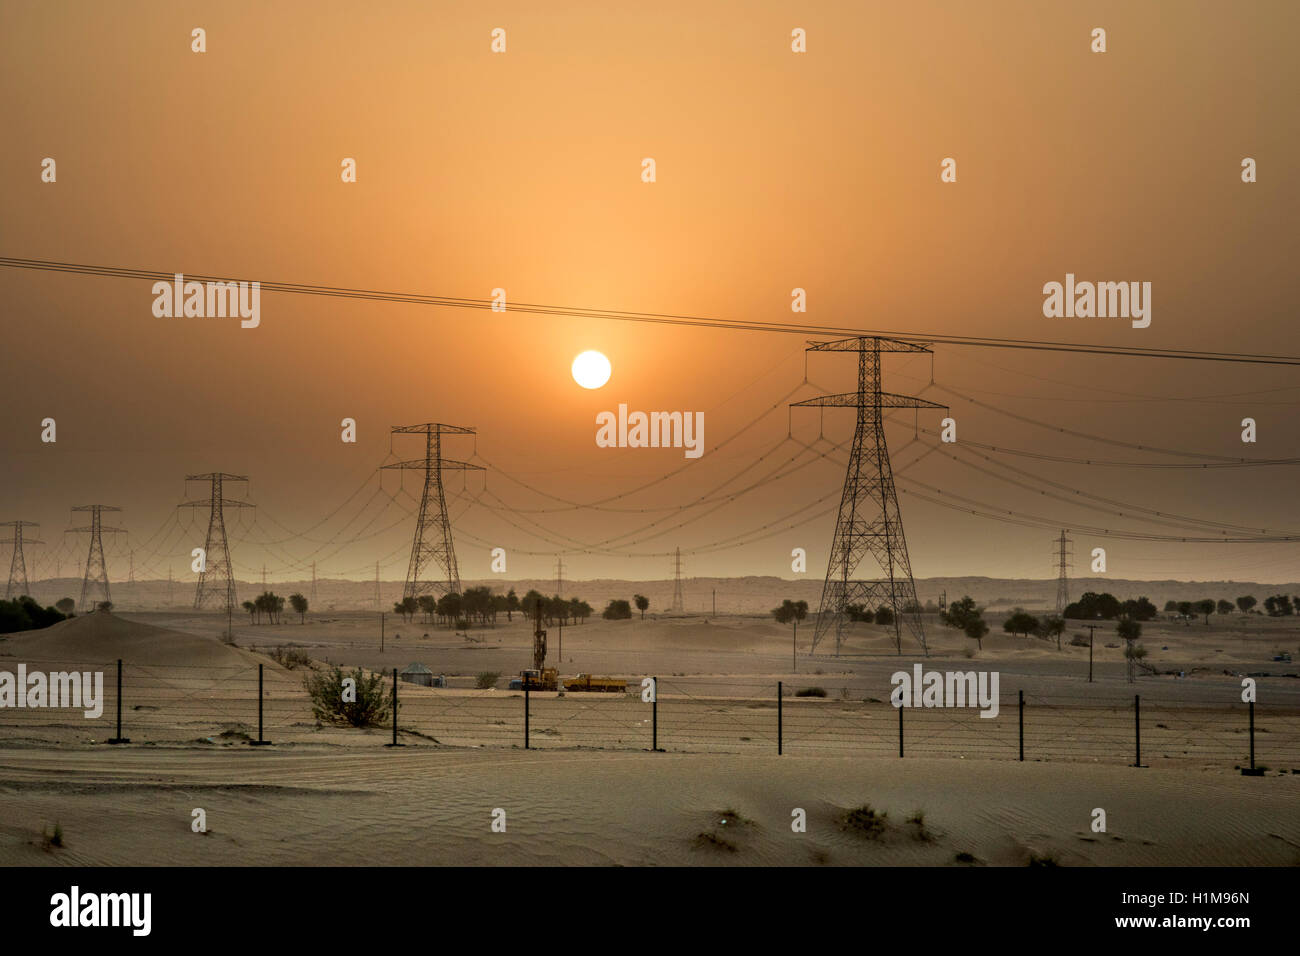 Pylônes électriques dunes safari désert beauté sunset Banque D'Images